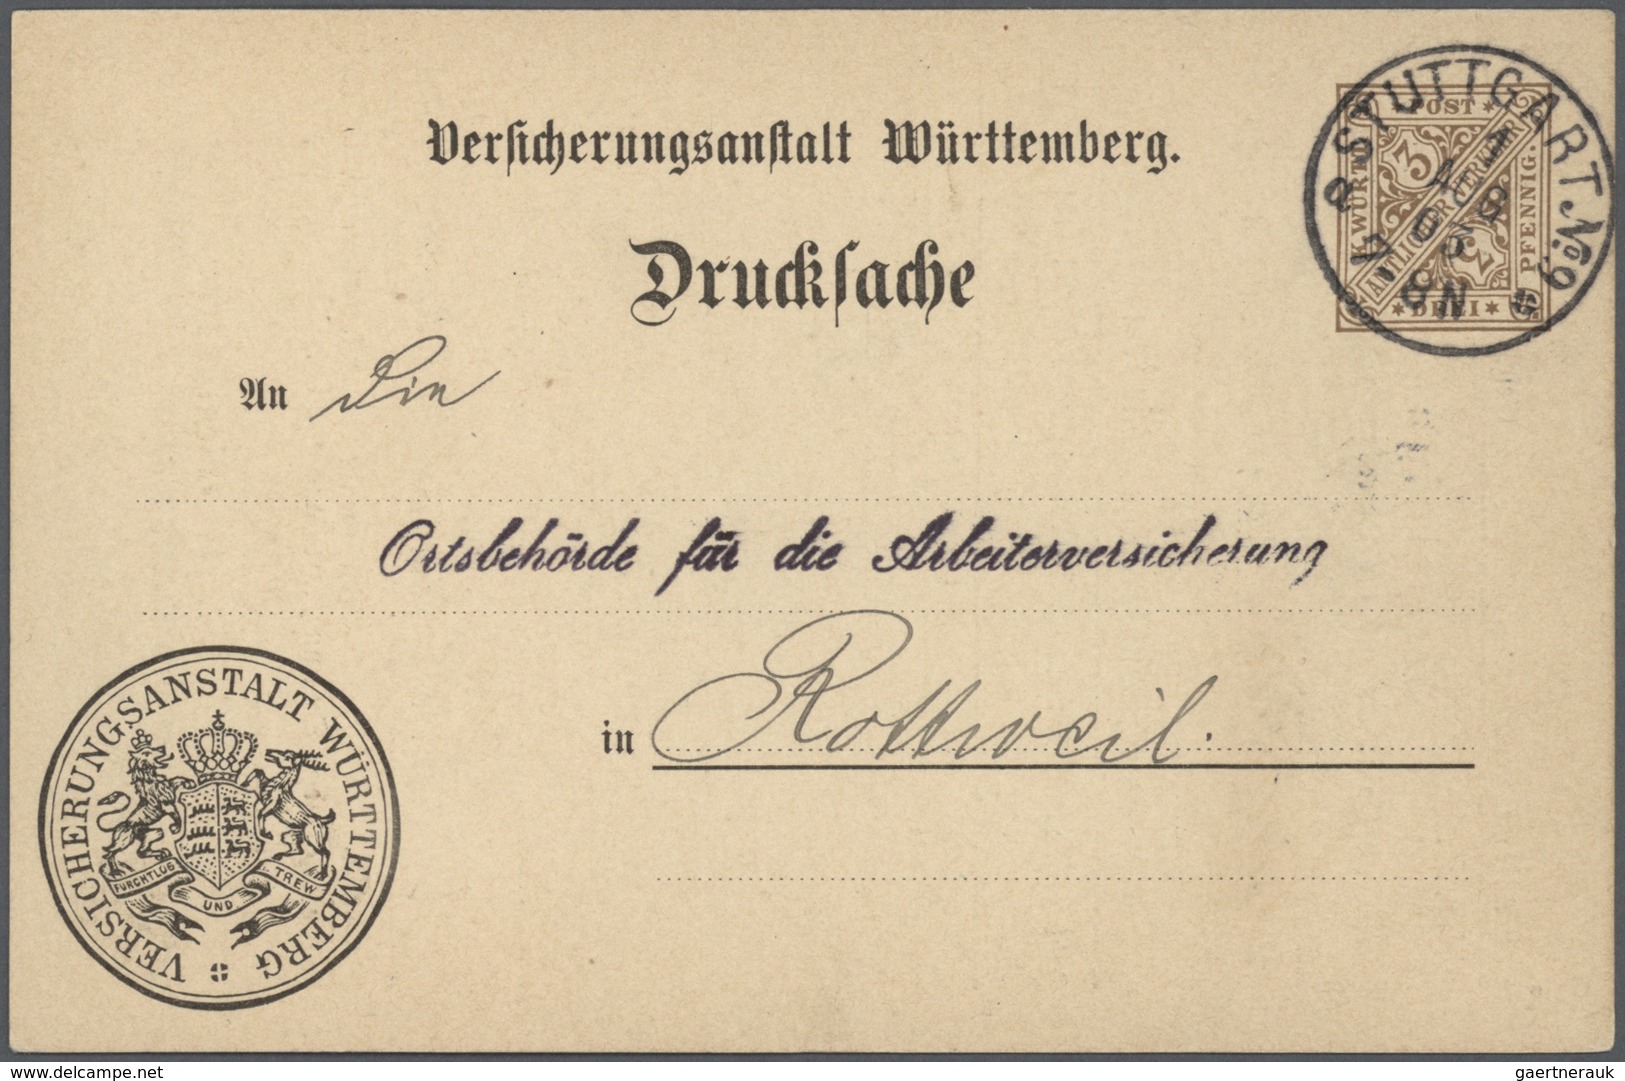 31367 Württemberg - Ganzsachen: Ab 1862. Spezialsammlung in 4 Bänden aus amerikanischem Nachlass. Dabei Po